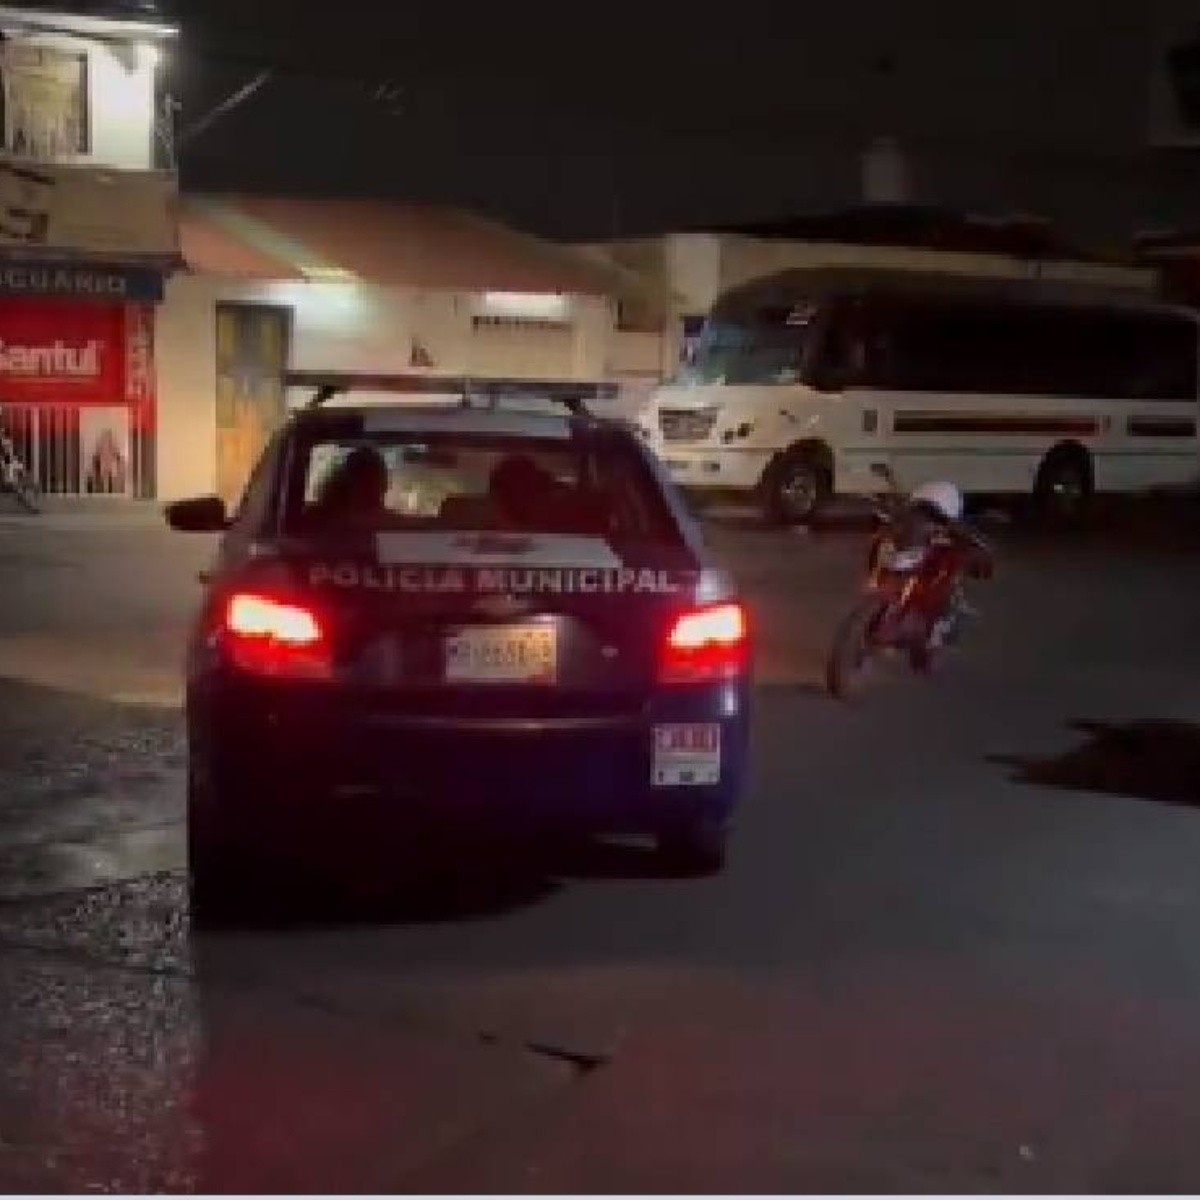 balacera en cuernavaca deja 10 muertos, incluidos 2 policías y dos heridos. videos